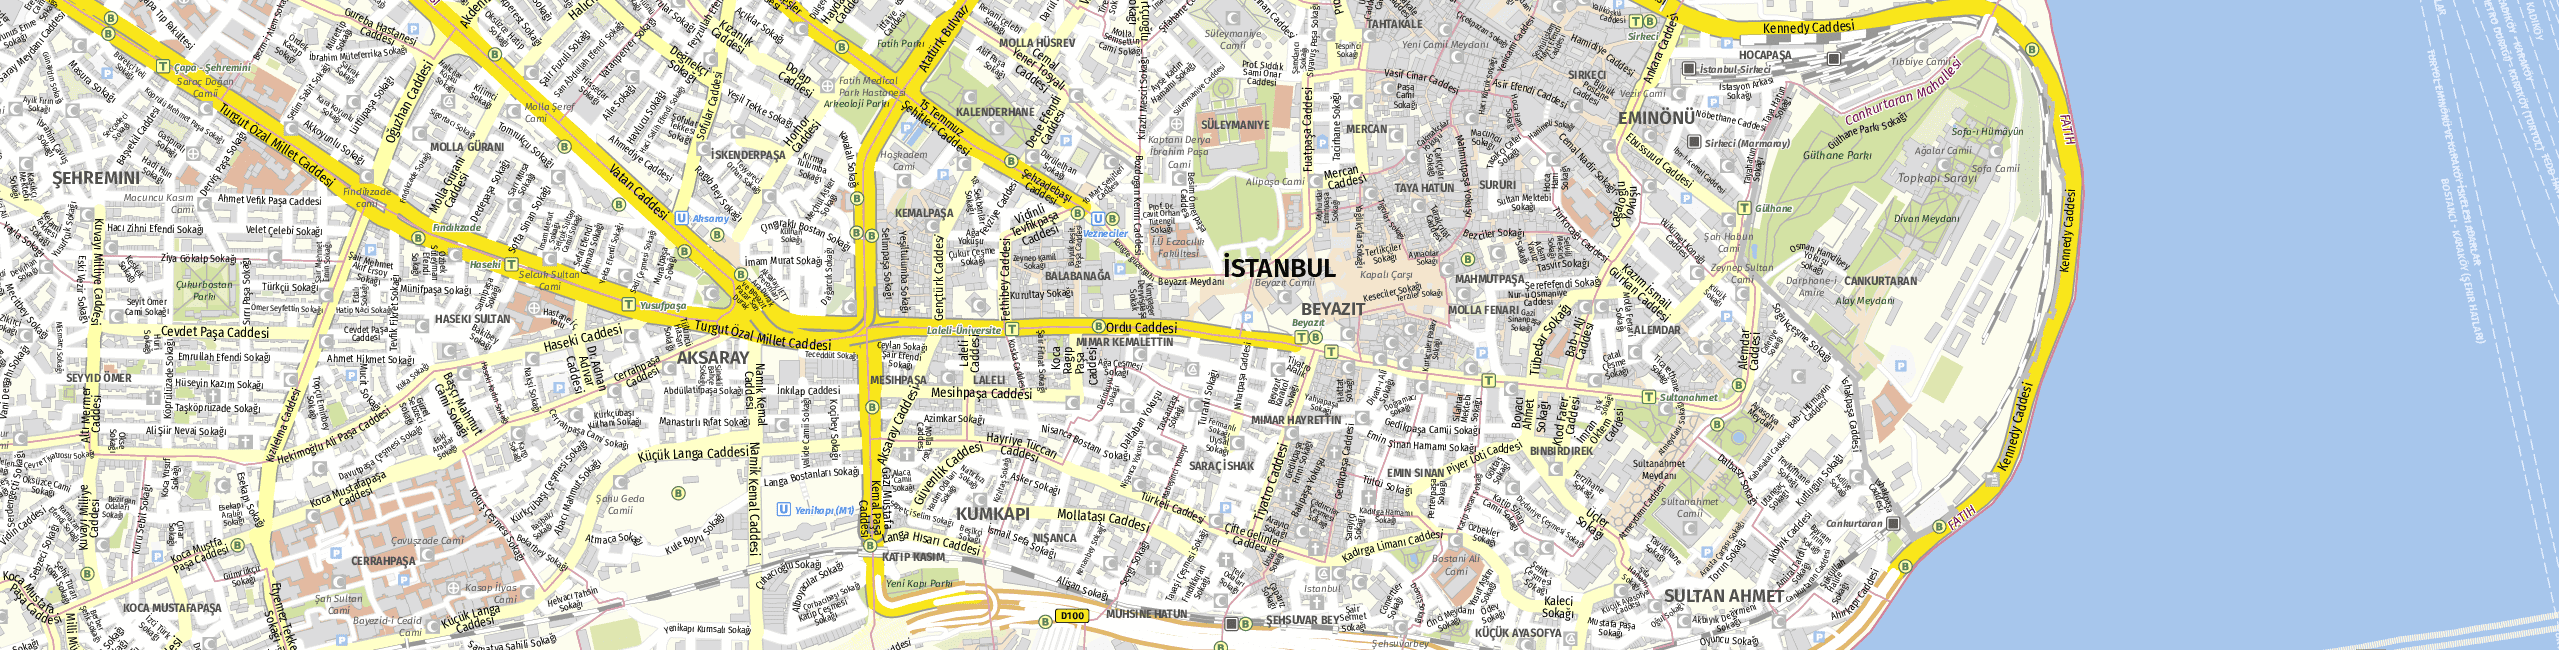 Stadtplan Istanbul zum Downloaden.